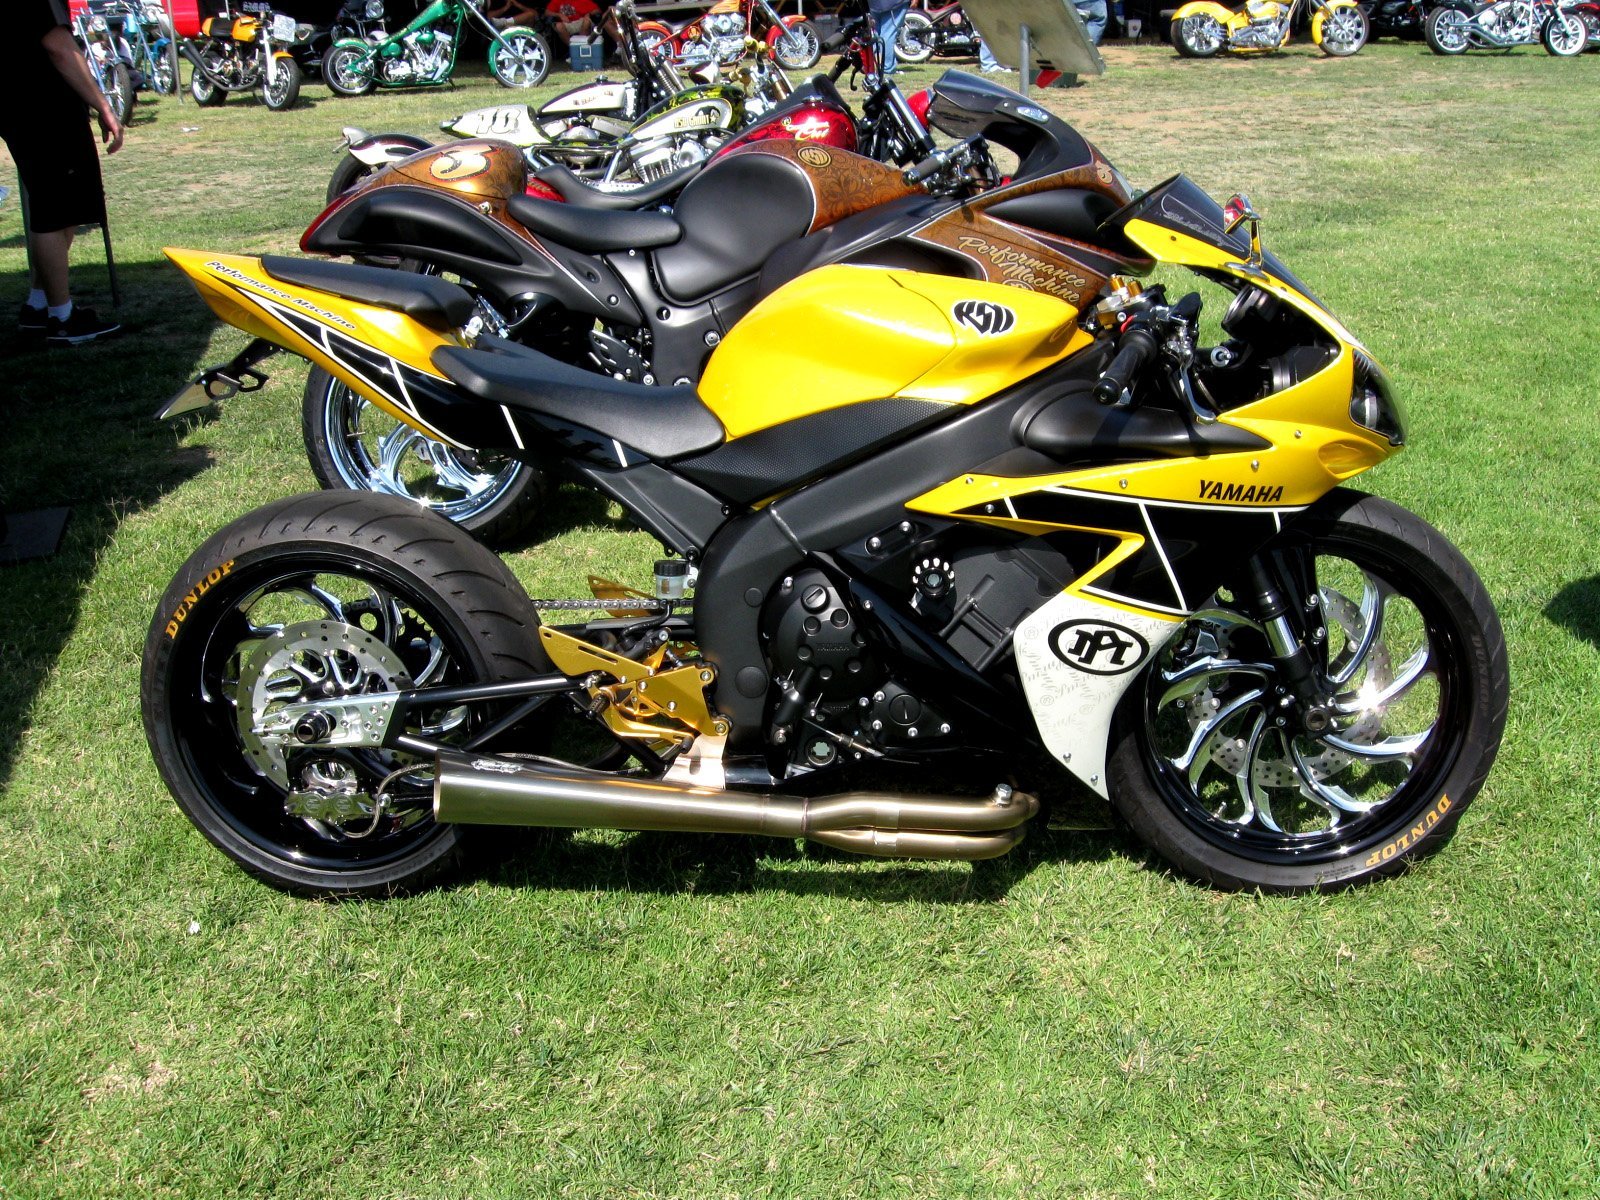 Фото мотоциклов спортивных. Ямаха р1. Yamaha r1 Custom. Спортбайк Ямаха r1. Сузуки желтый 250 куб спортбайк.